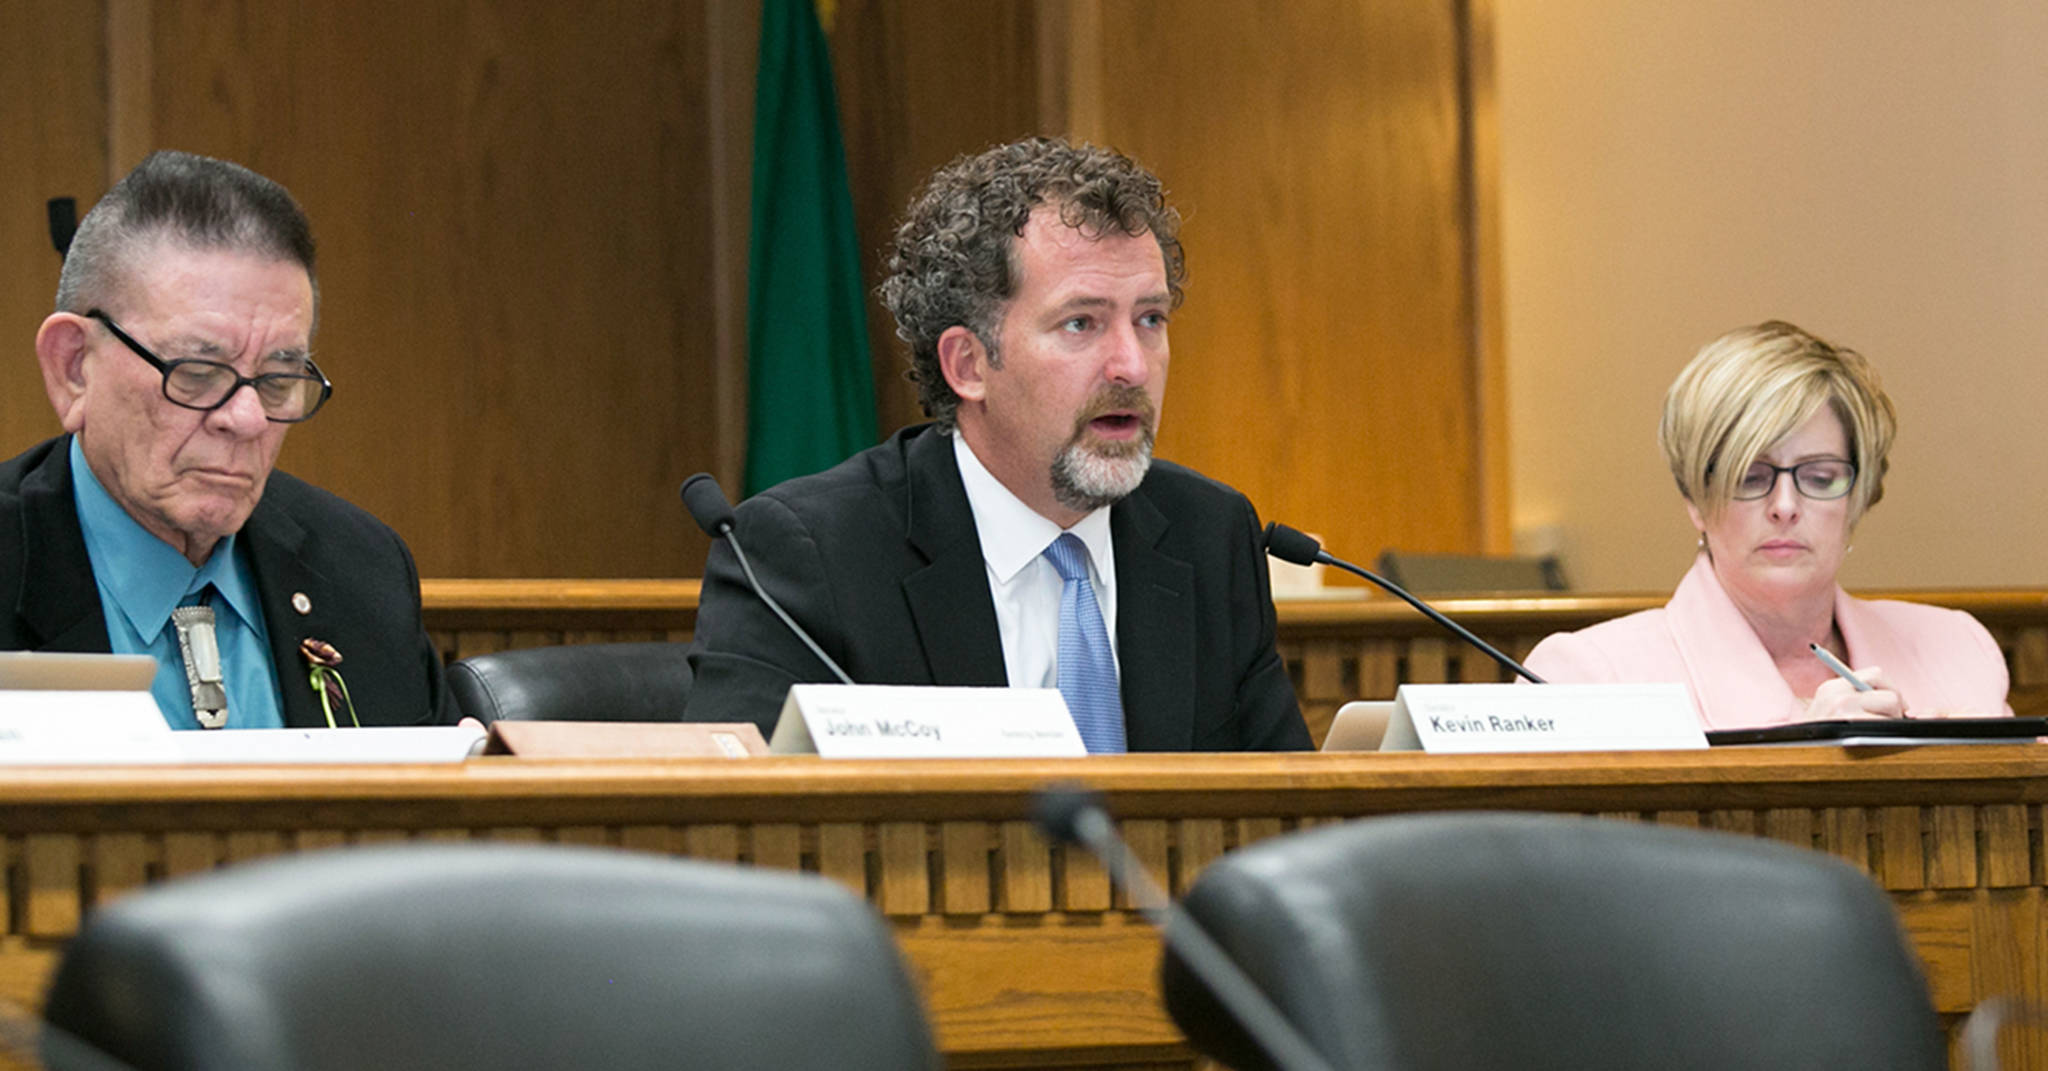 Sen. Kevin Ranker under investigation for allegations of sexual harassment